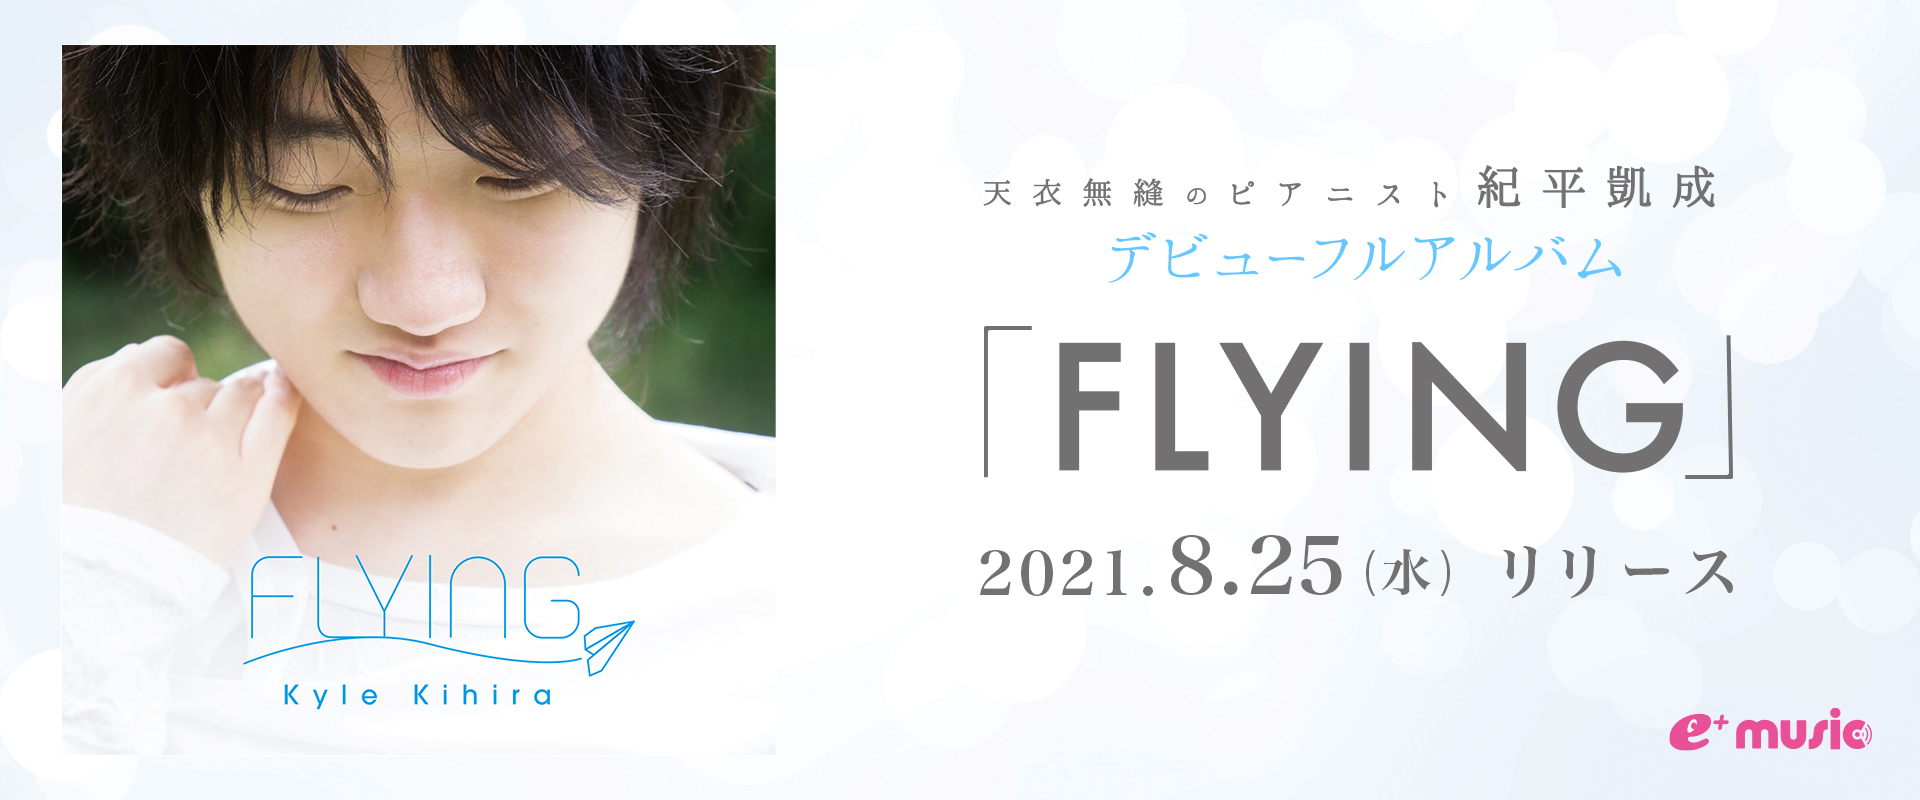 天衣無縫のピアニスト 紀平凱成 デビューフルアルバム「FLYING」2021.8.25(水)リリース